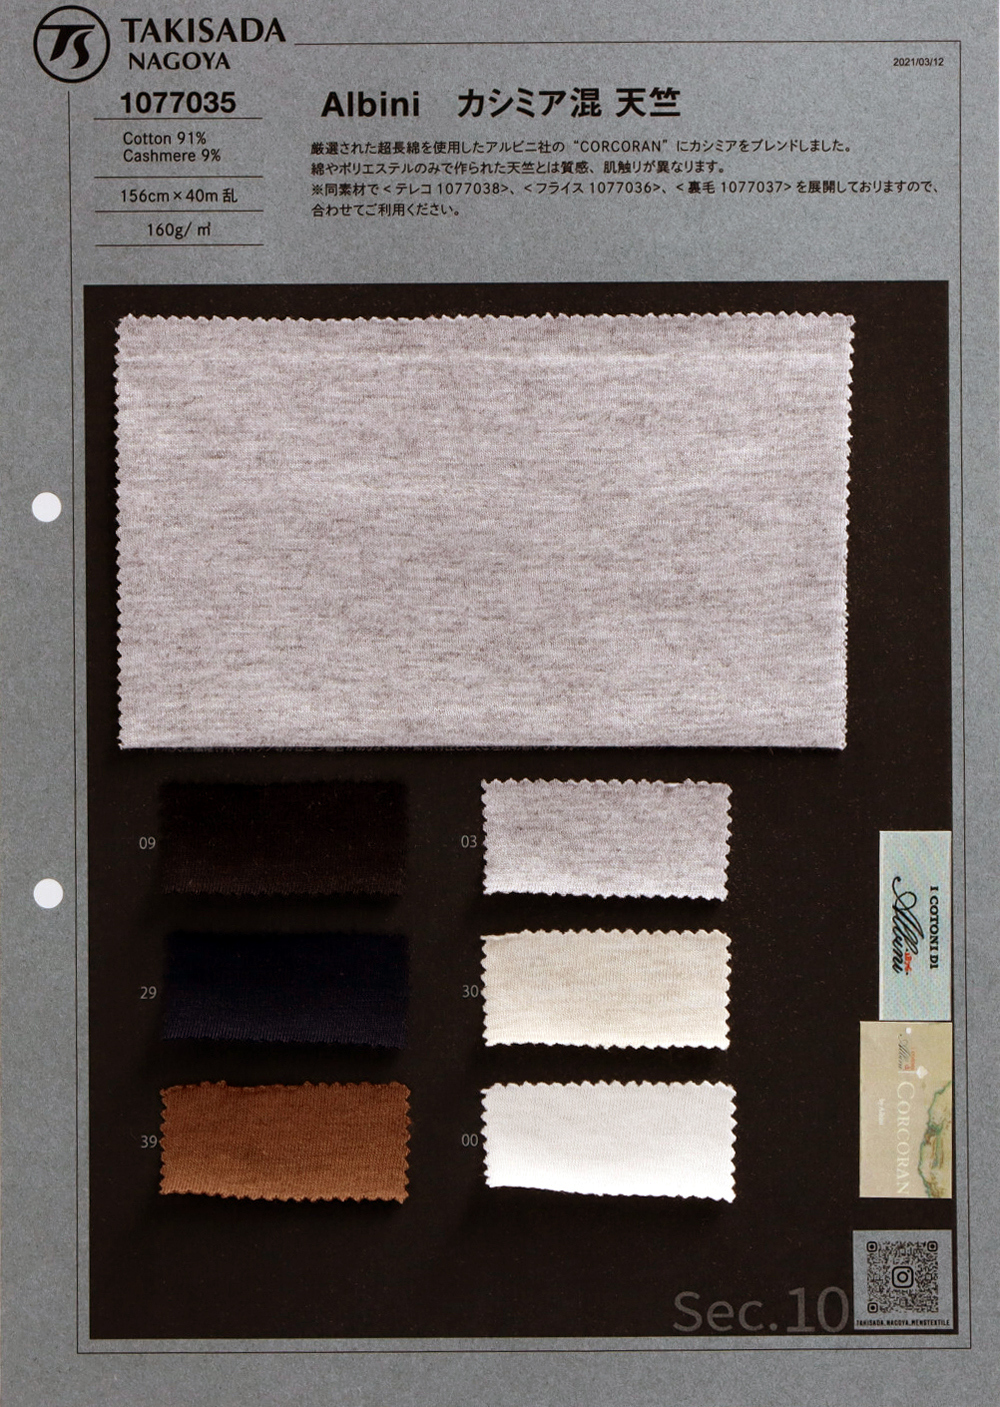 1077035 Jersey De Cachemir De Algodón ALBINI[Fabrica Textil] Takisada Nagoya